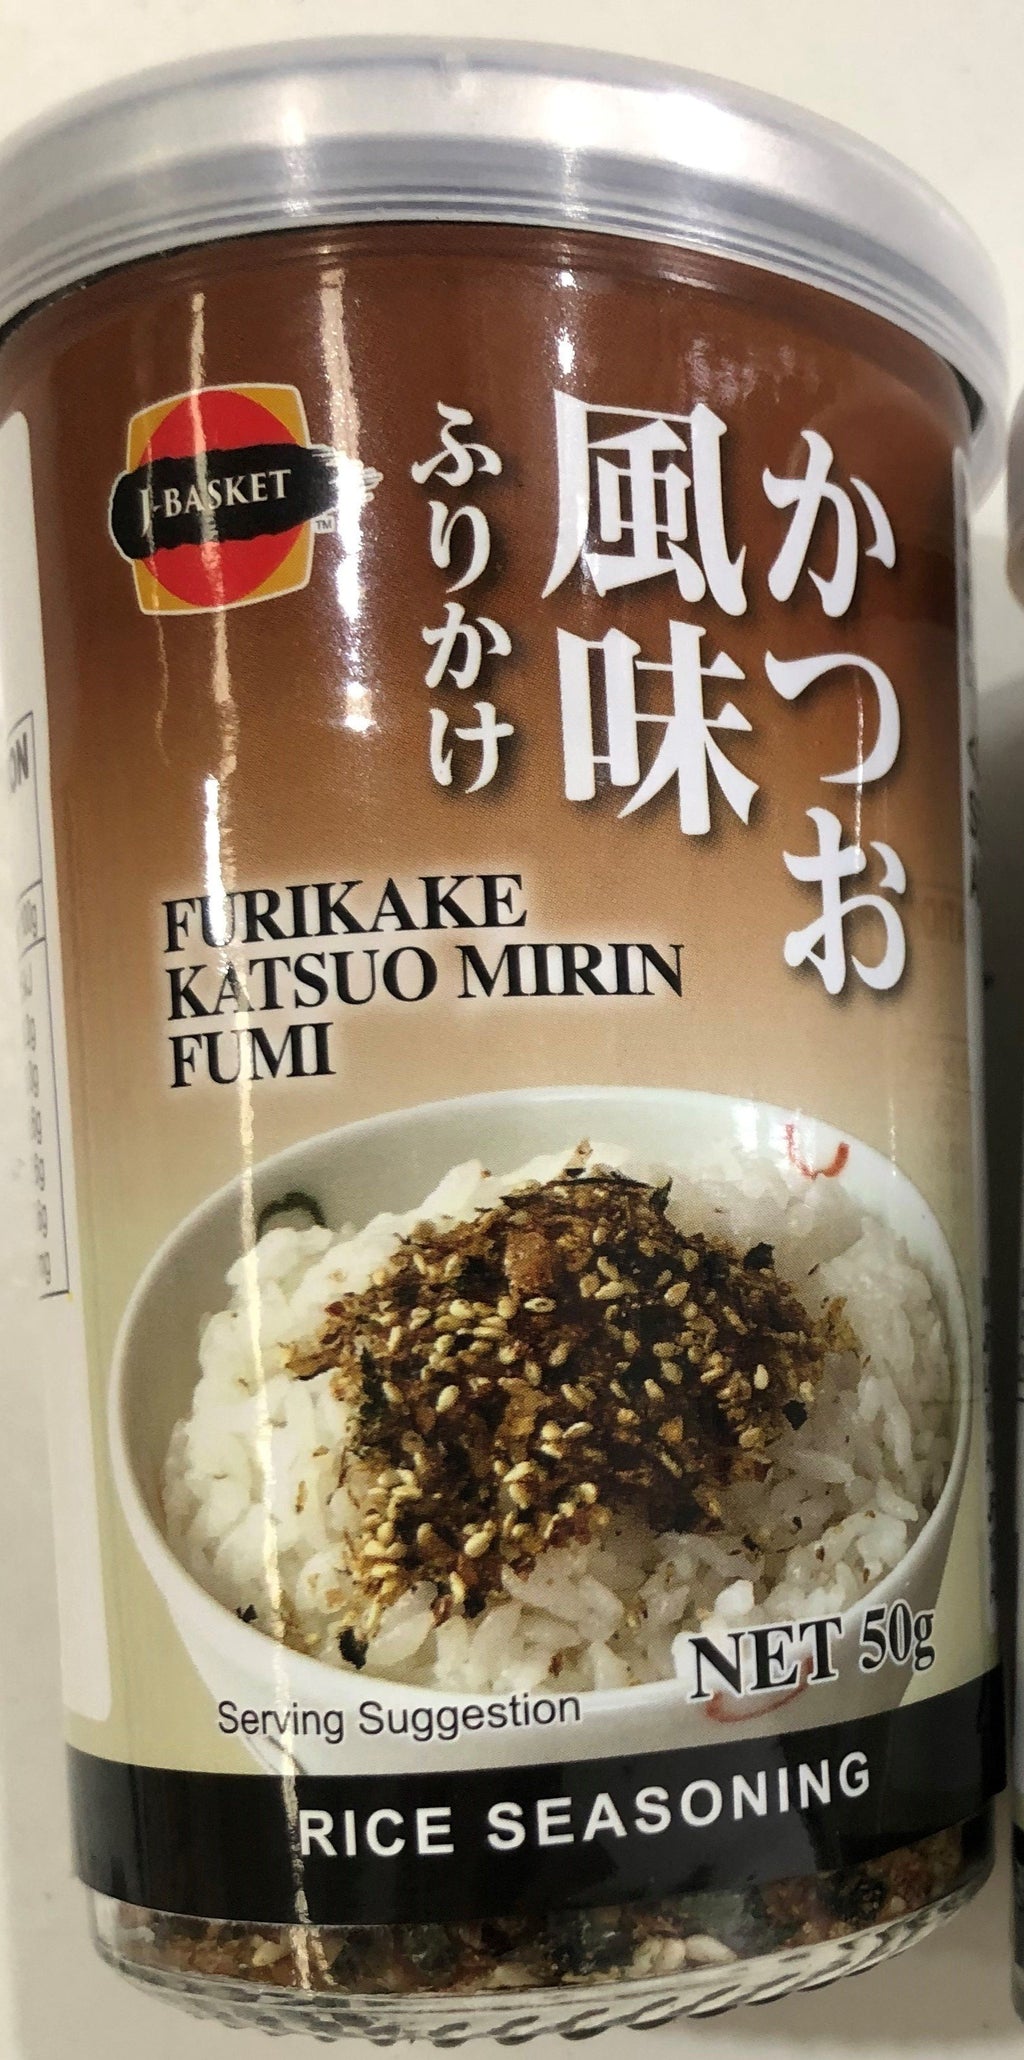 Rice Seasoning Katsuo Mirin 50g Furikake (Brown Label)